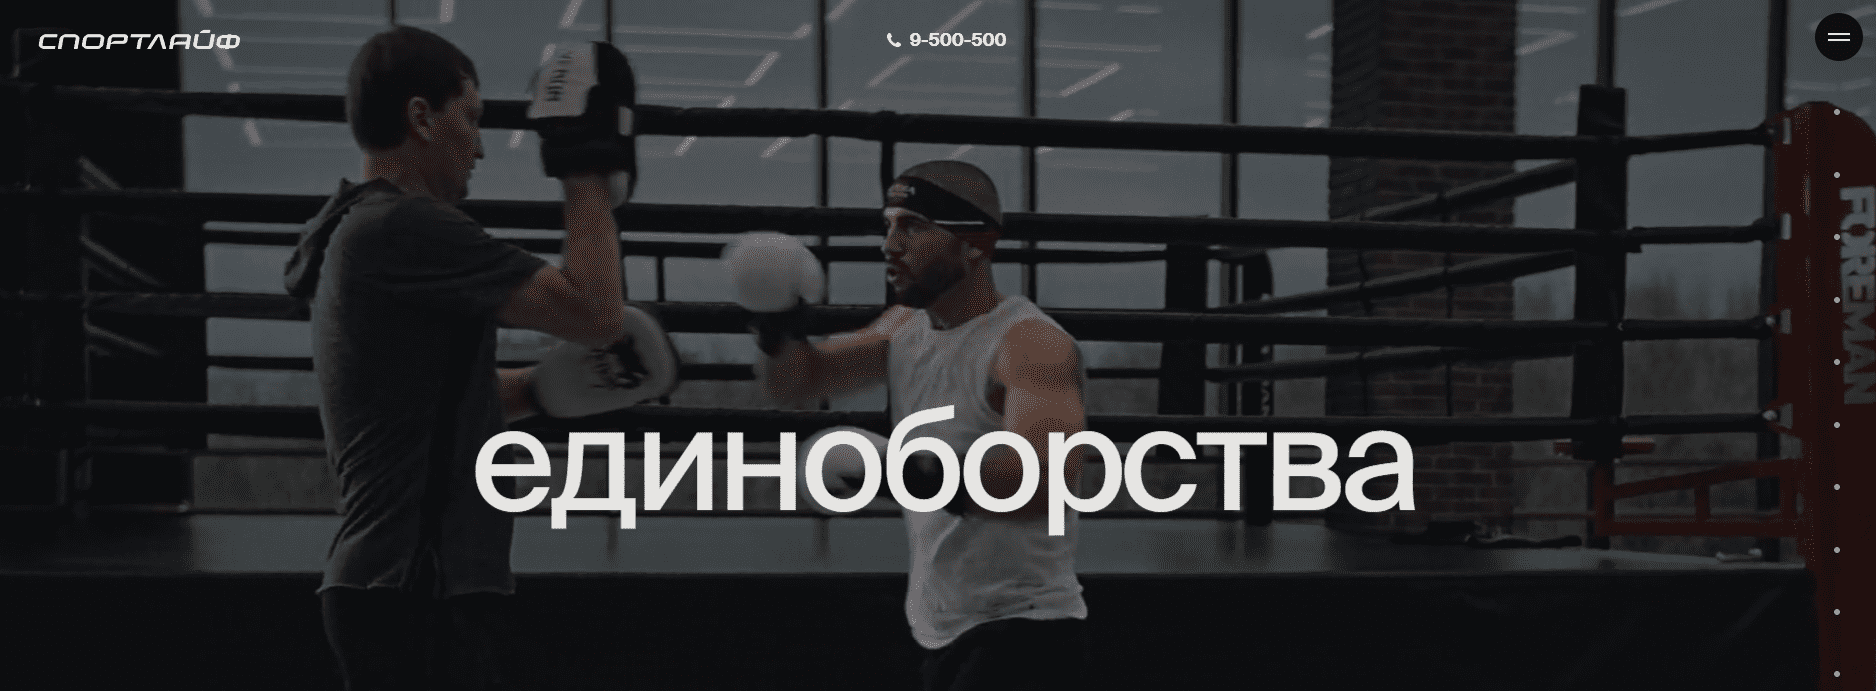 Спортлайф (sportlifeclub.ru)